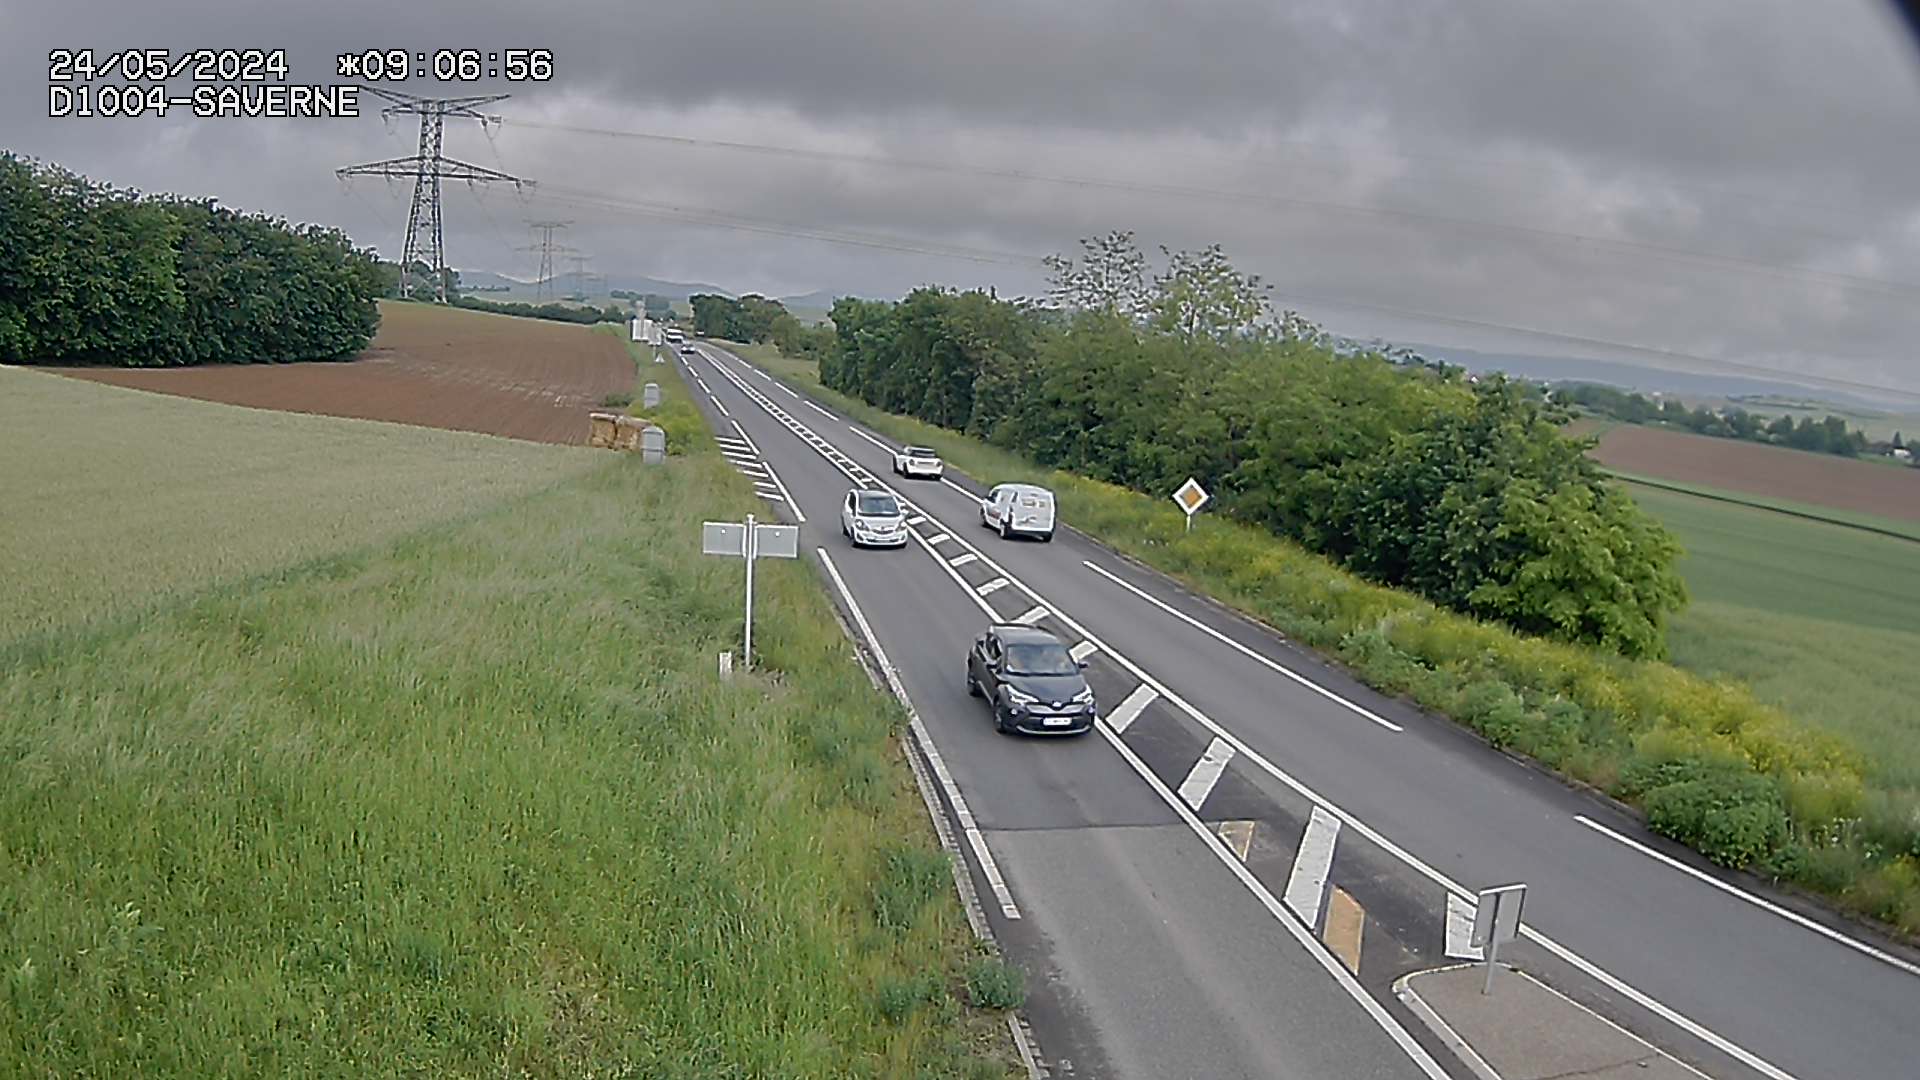 Webcam routière sur la D1004 en direction de Saverne à Wasselonne